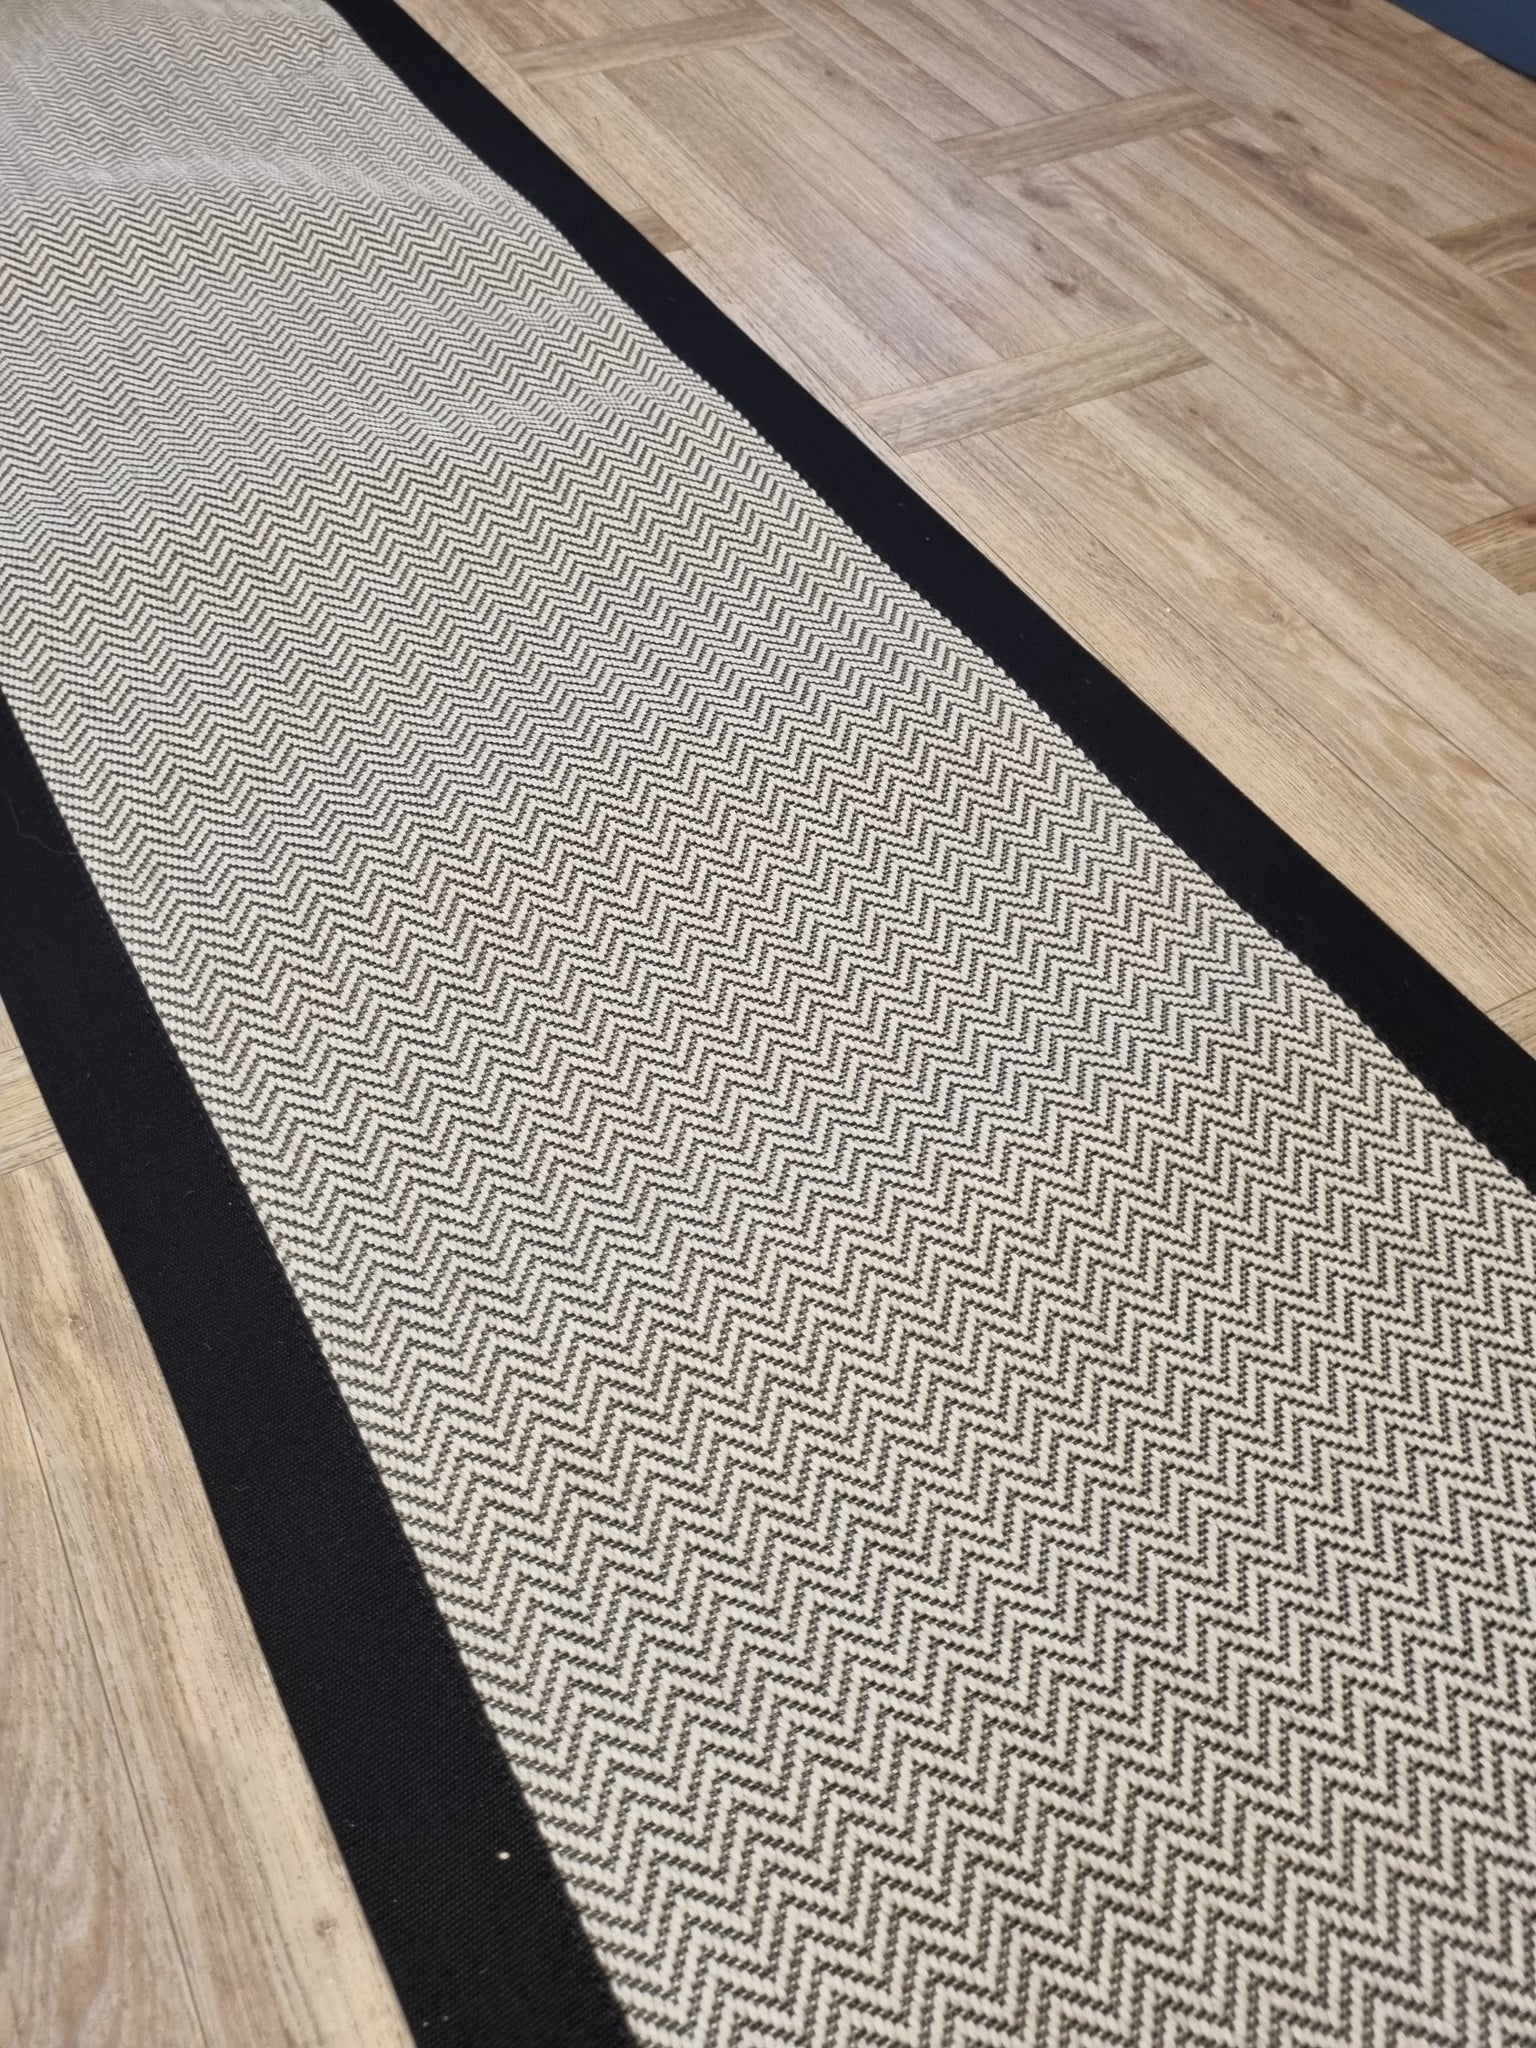 New! Black & White Herringbone Faux Sisal Carpet Stair Runner Black wh –  Fenstoncarter